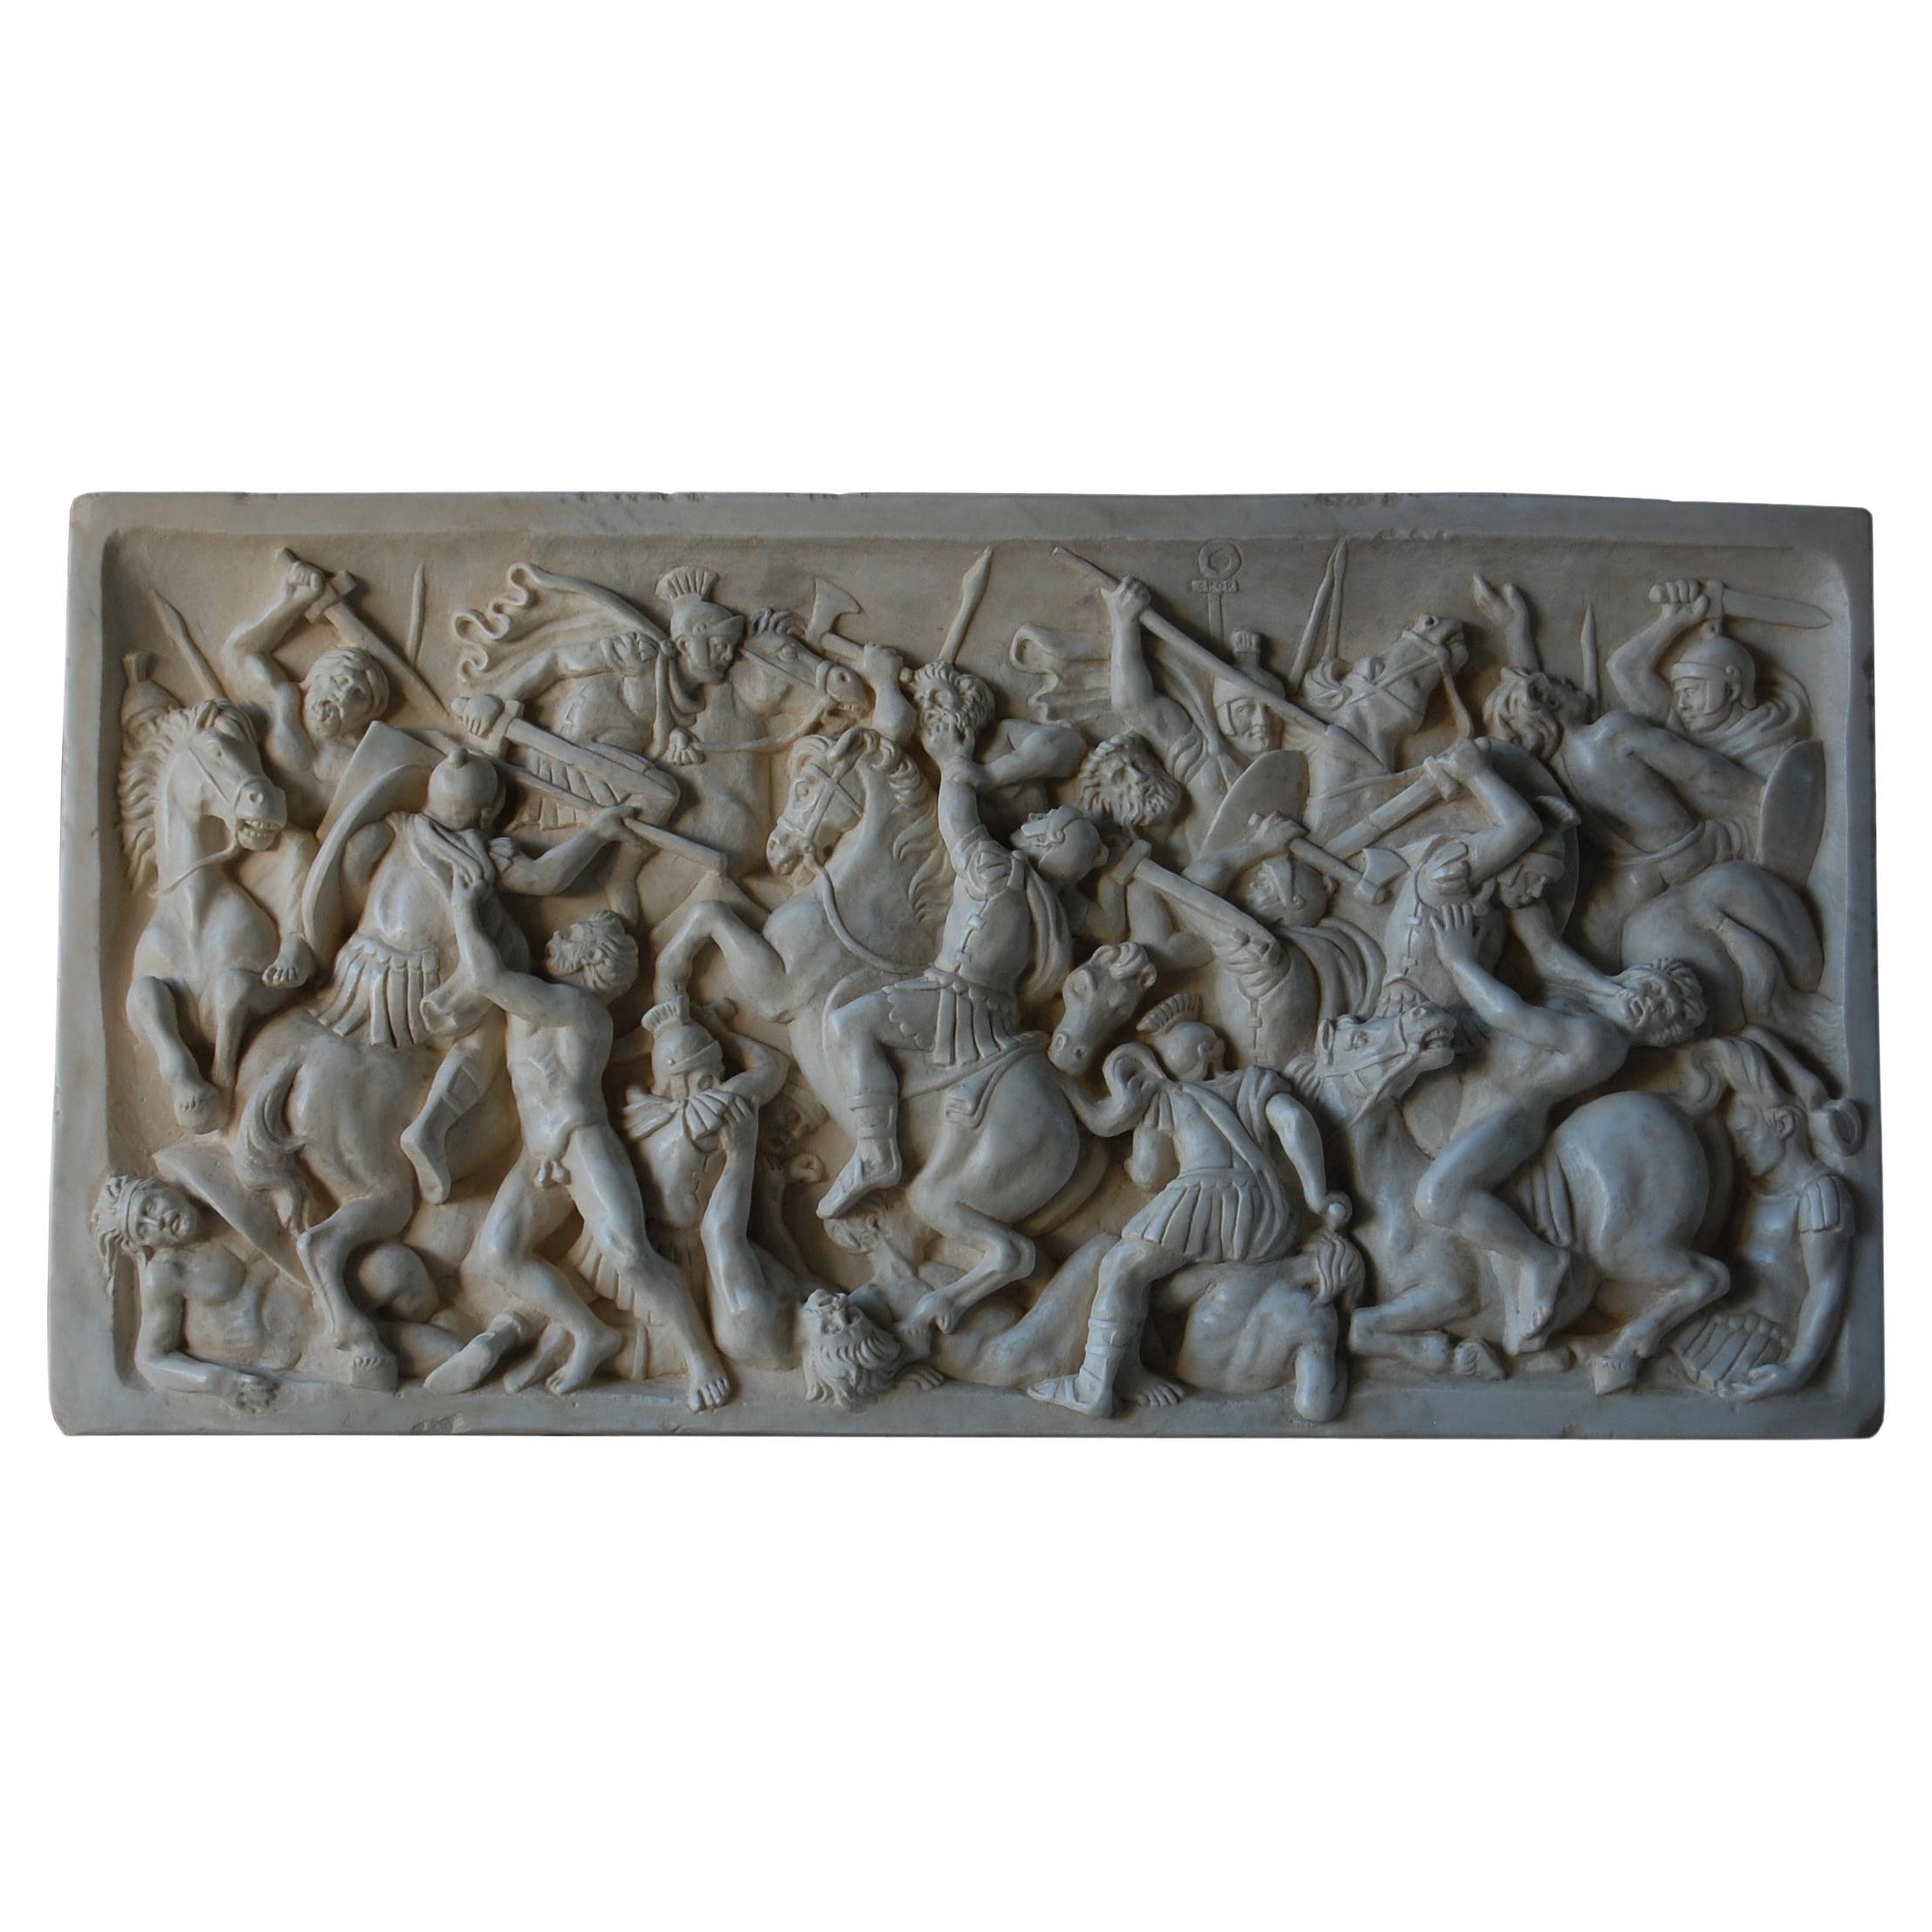 Altorilievo battaglia romana in marmo bianco di Carrara